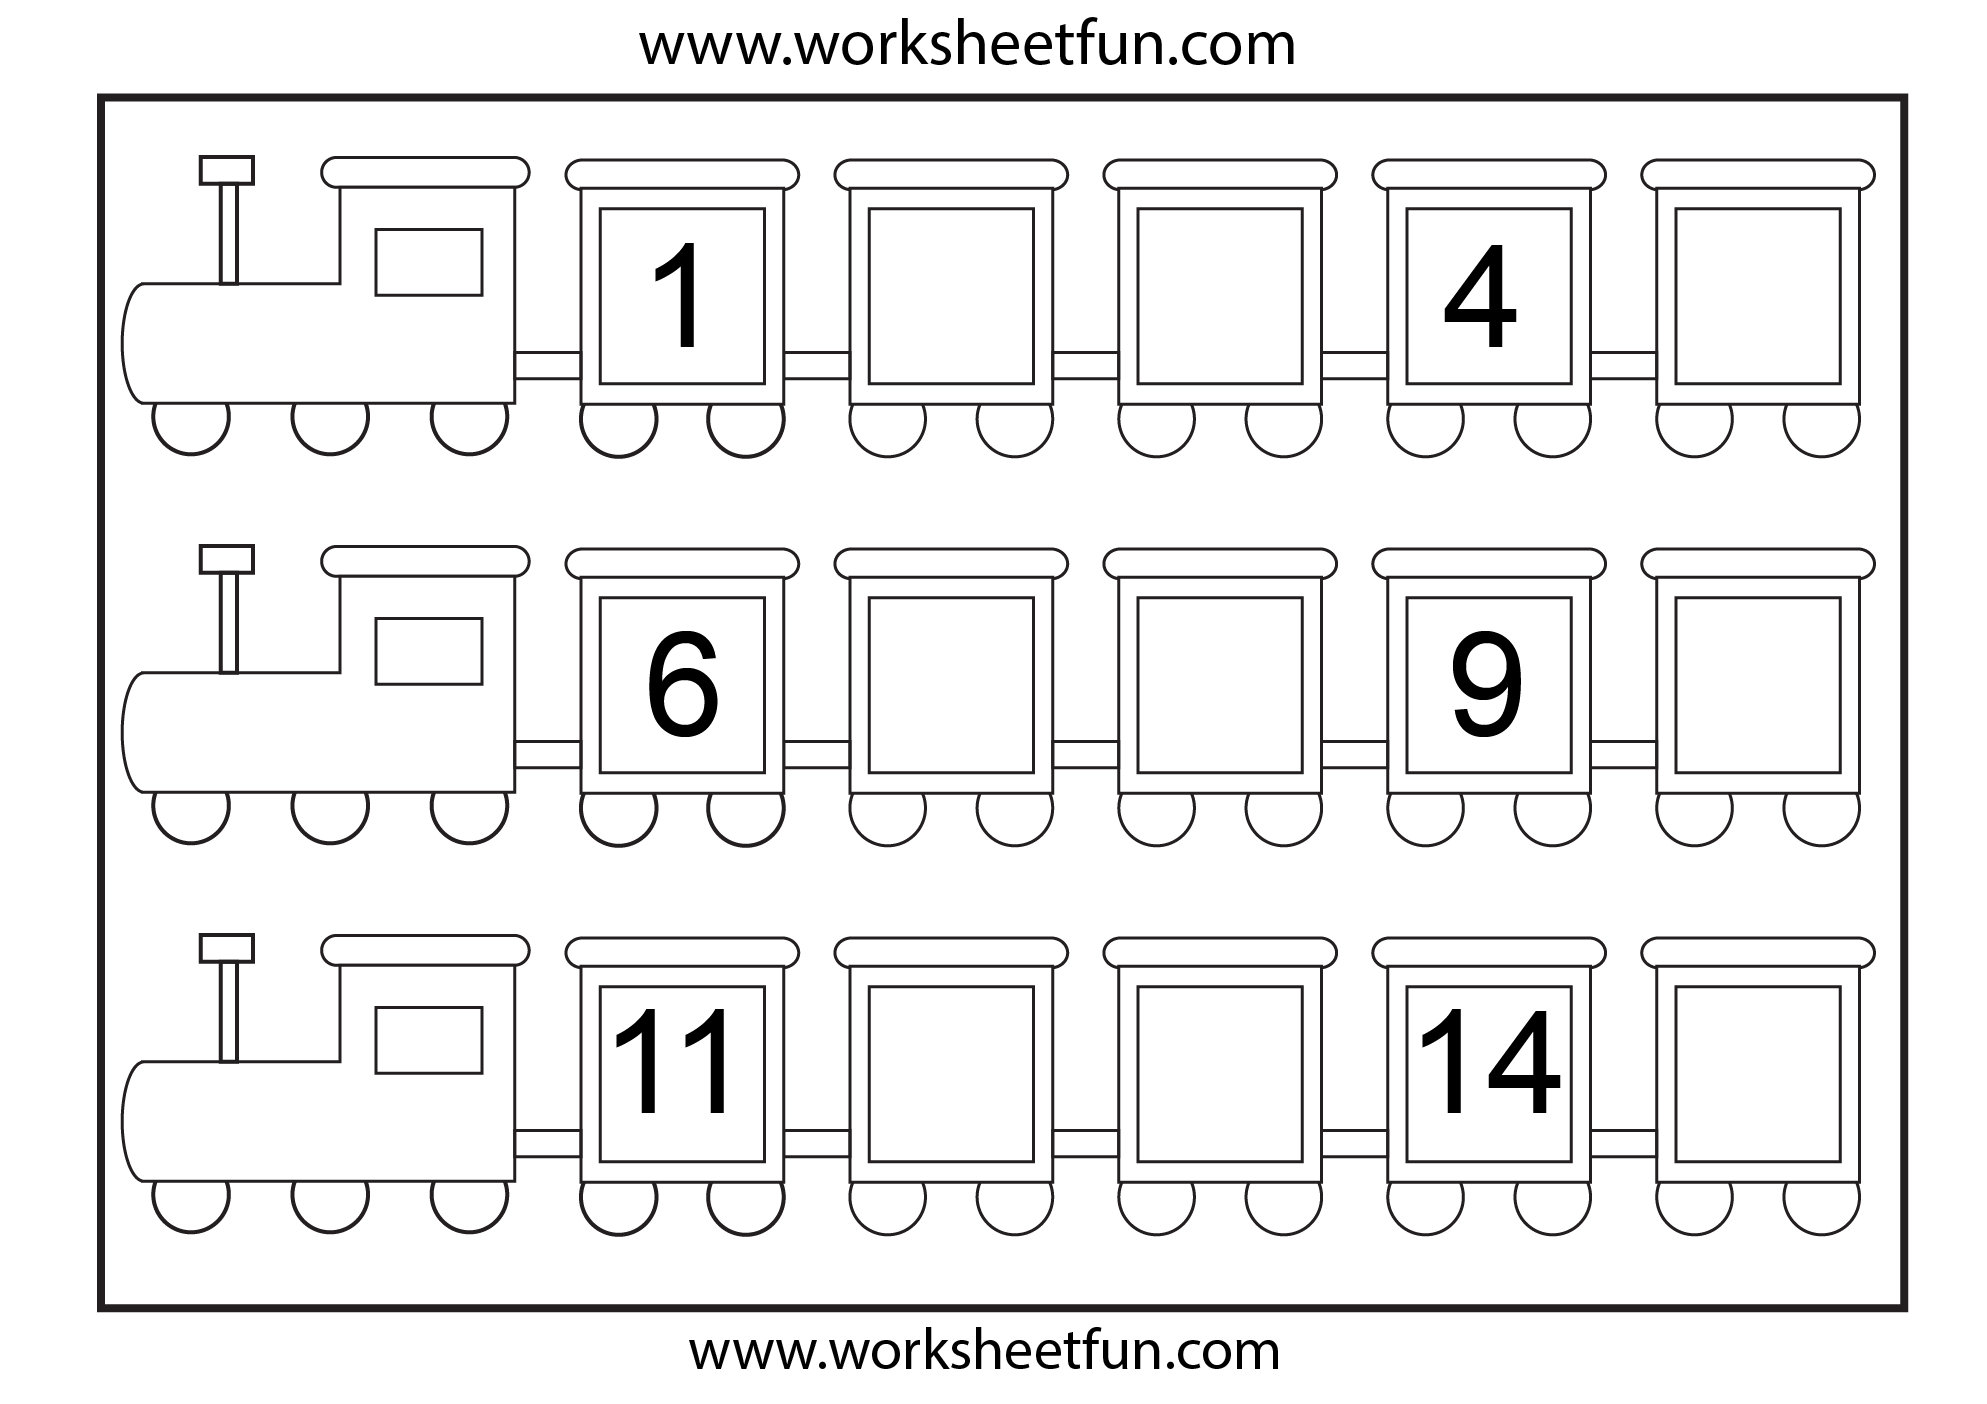 Missing Number Worksheet: New 684 Missing Number Worksheets Printable - Free Printable Missing Number Worksheets